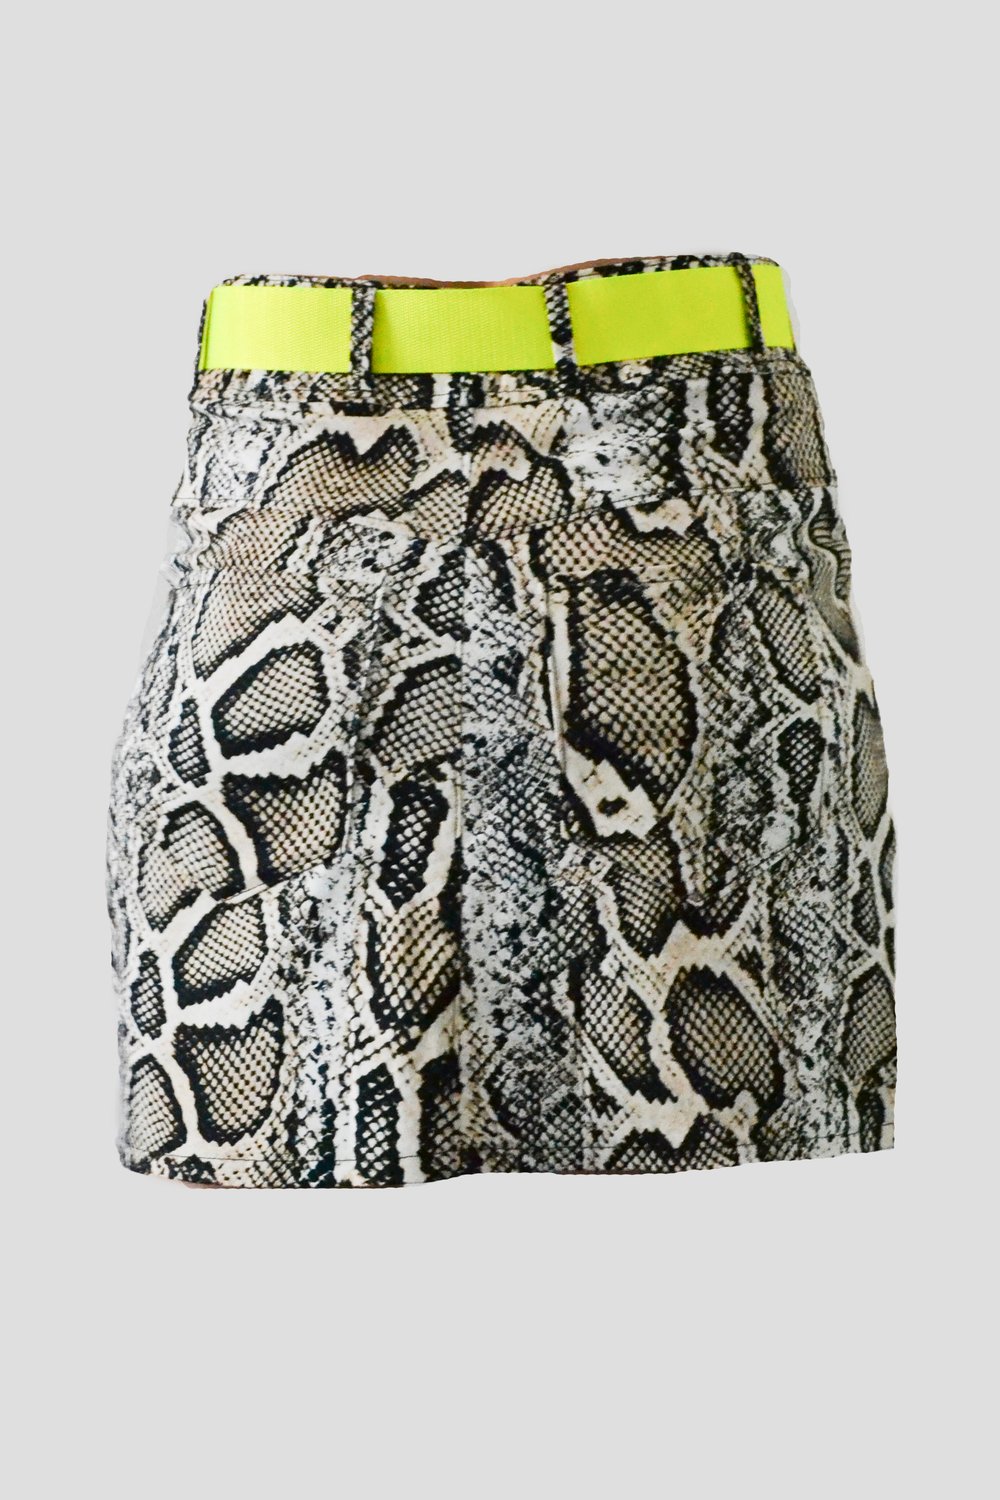 Image of Snake Skirt